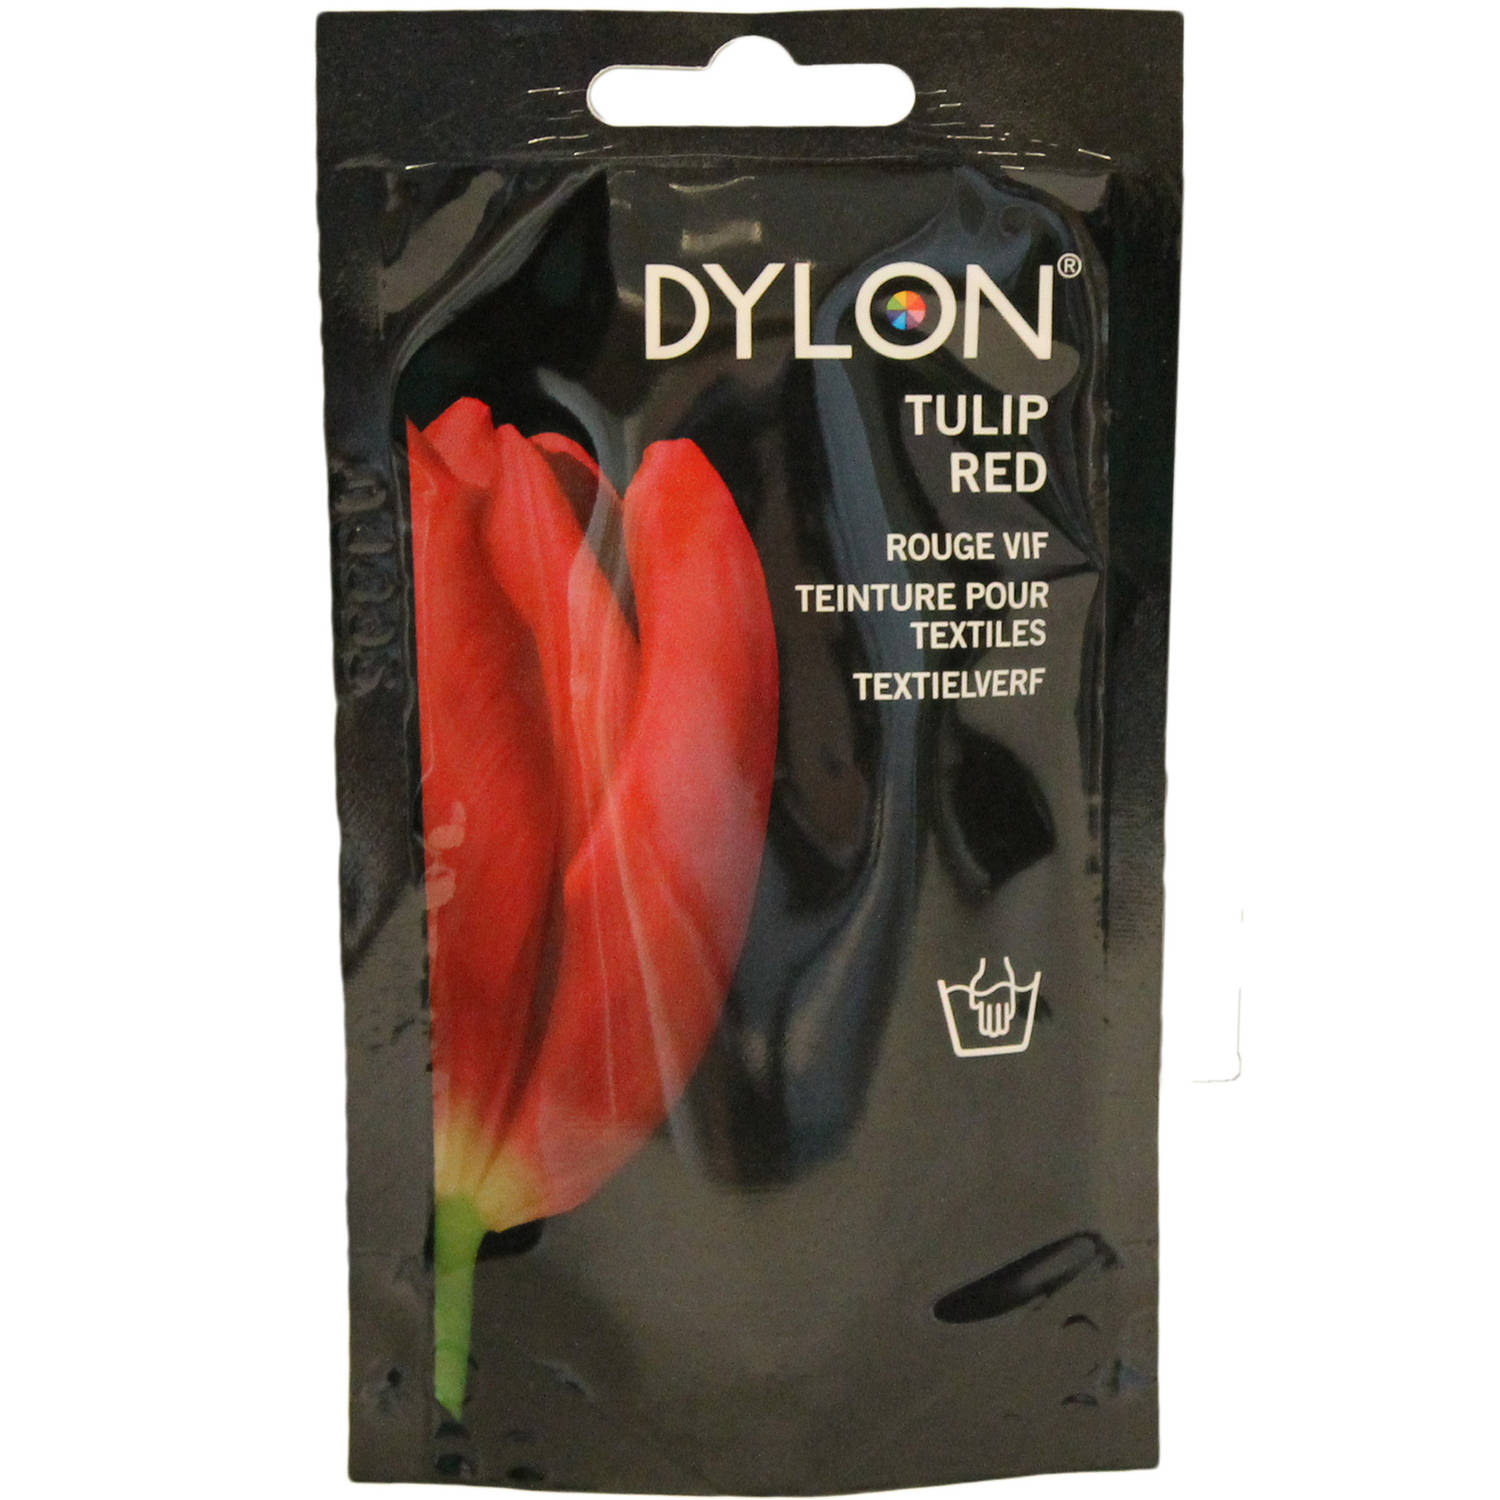 Dylon Handwas 36 Tulip Red 50gr